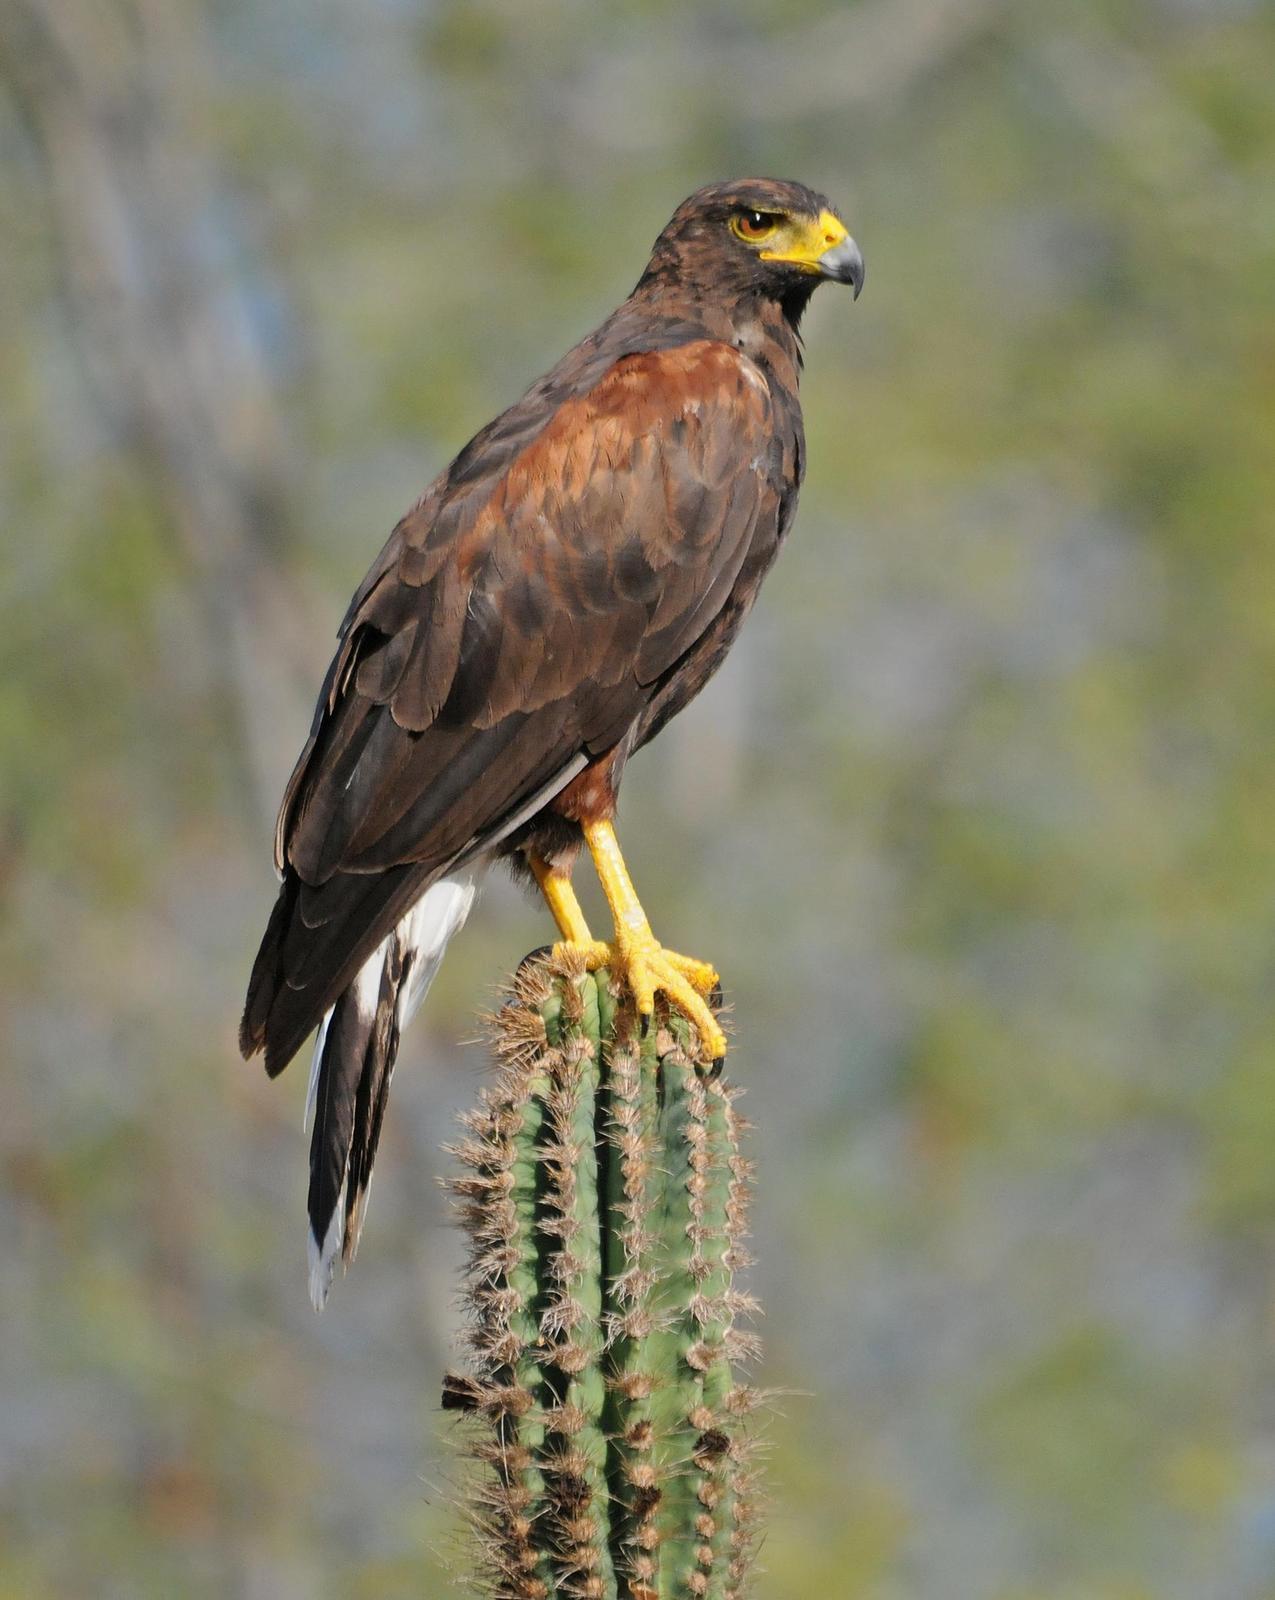 Harris's Hawk Photo by Steven Mlodinow